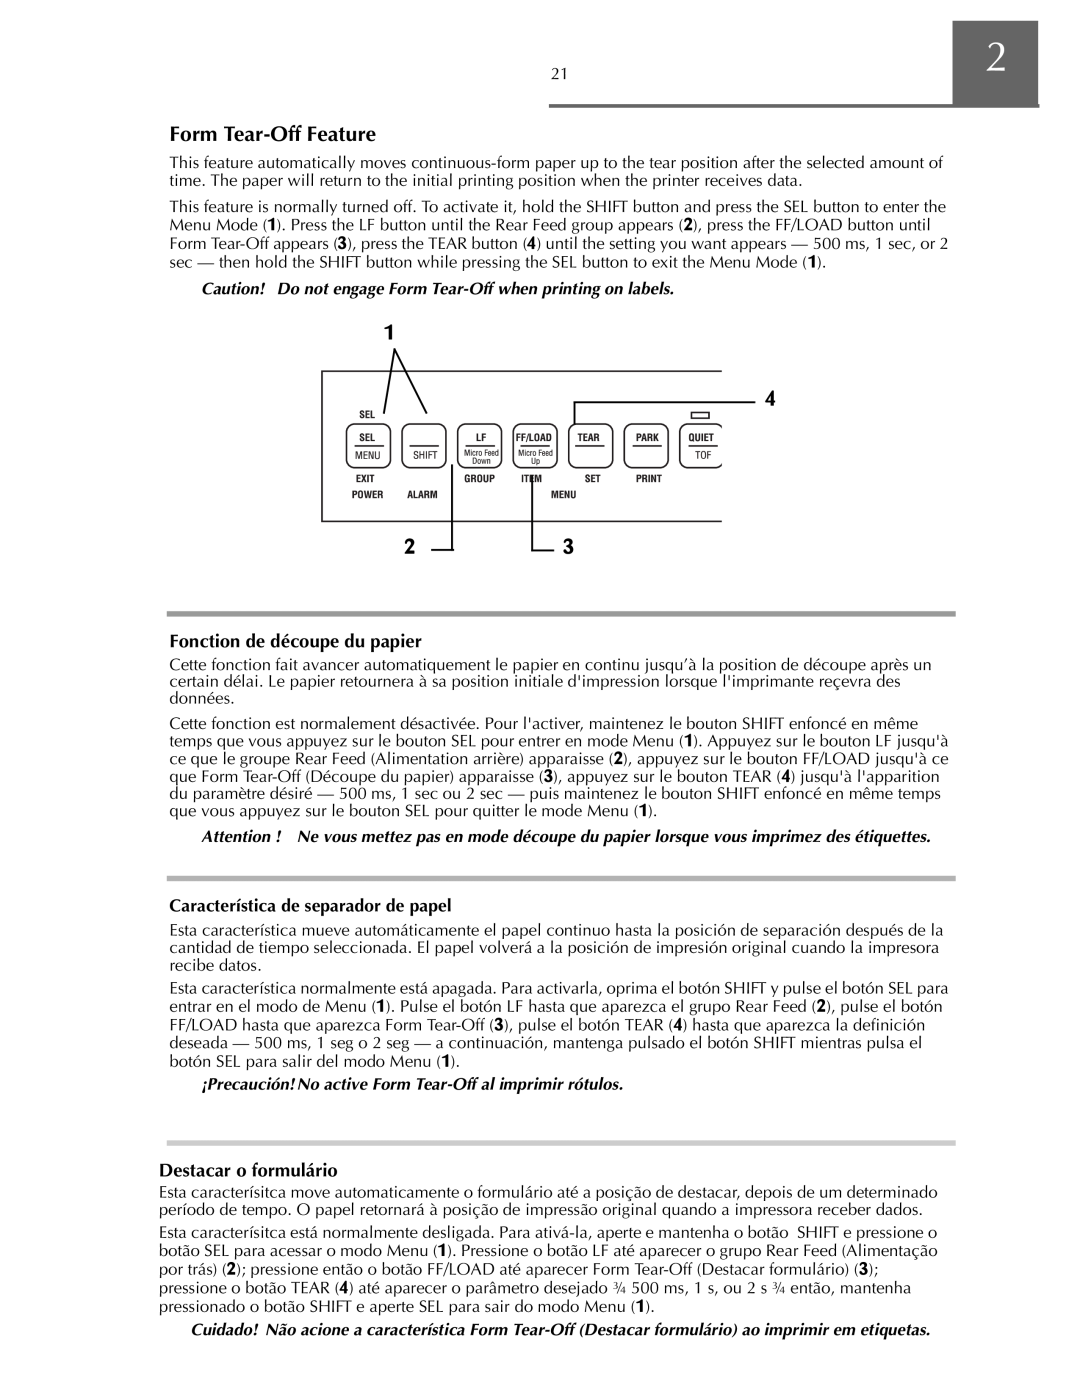 Oki ML590 manual Fonction de découpe du papier, Destacar o formulário 